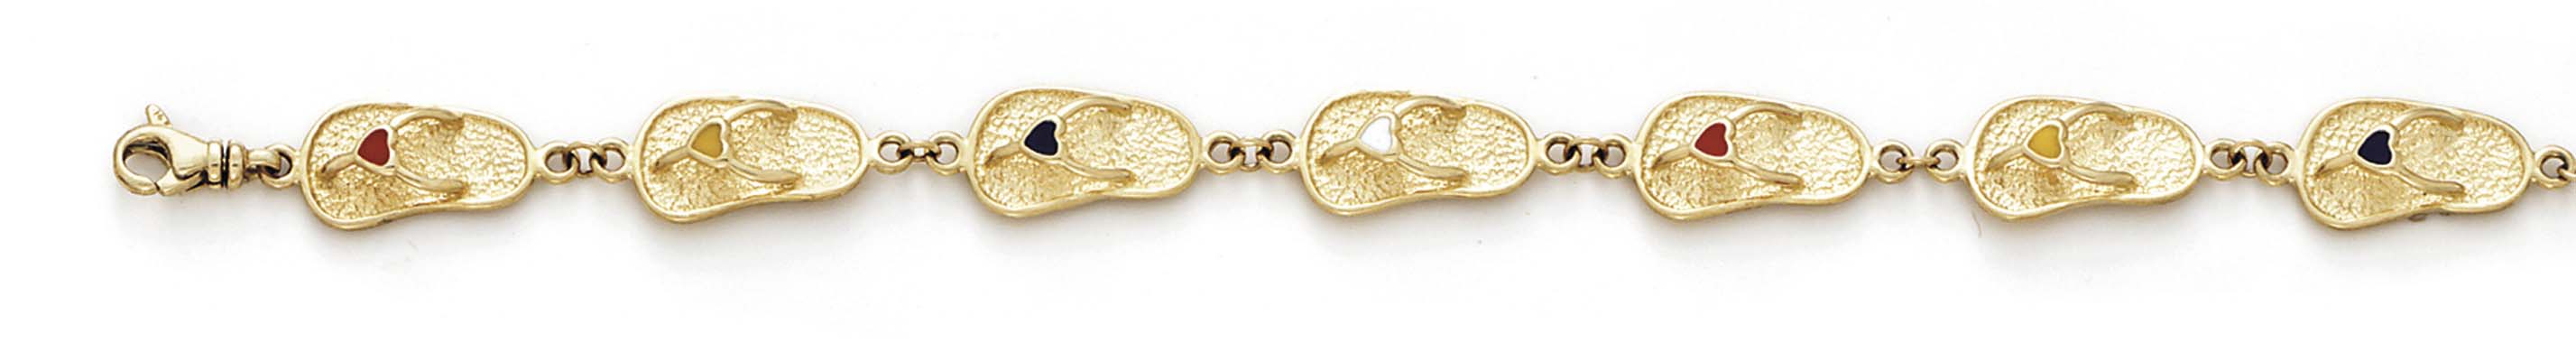 
14k Yellow Gold Enameled Flip-Flop Bracelet - 7.25 Inch
